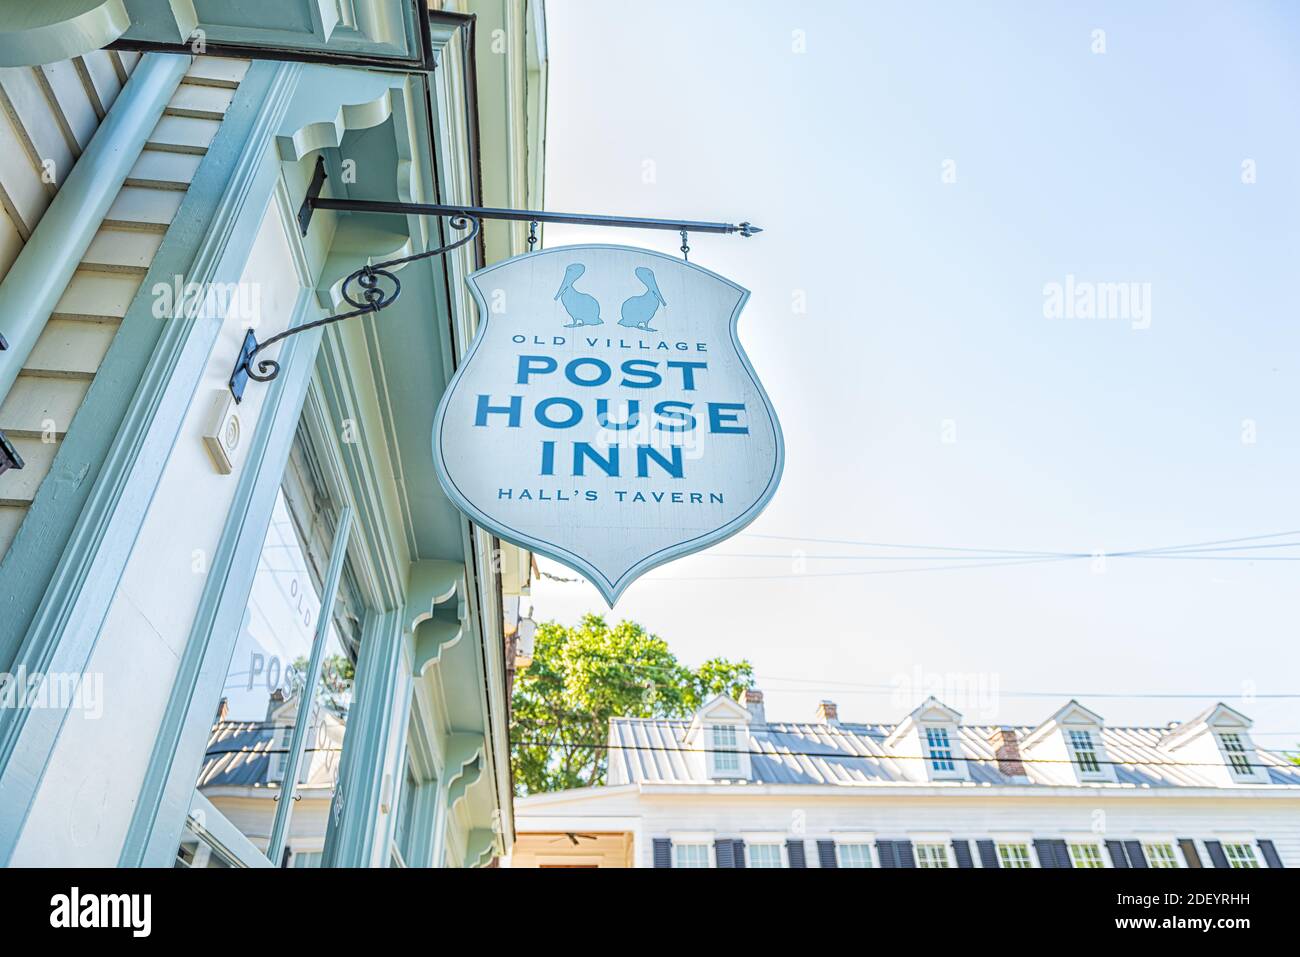 Mount Pleasant, USA - 11. Mai 2018: Charleston South Carolina Gegend mit Altstadt Straße und Post House Inn Hotel kleines Schild für Gebäude Eingang Stockfoto